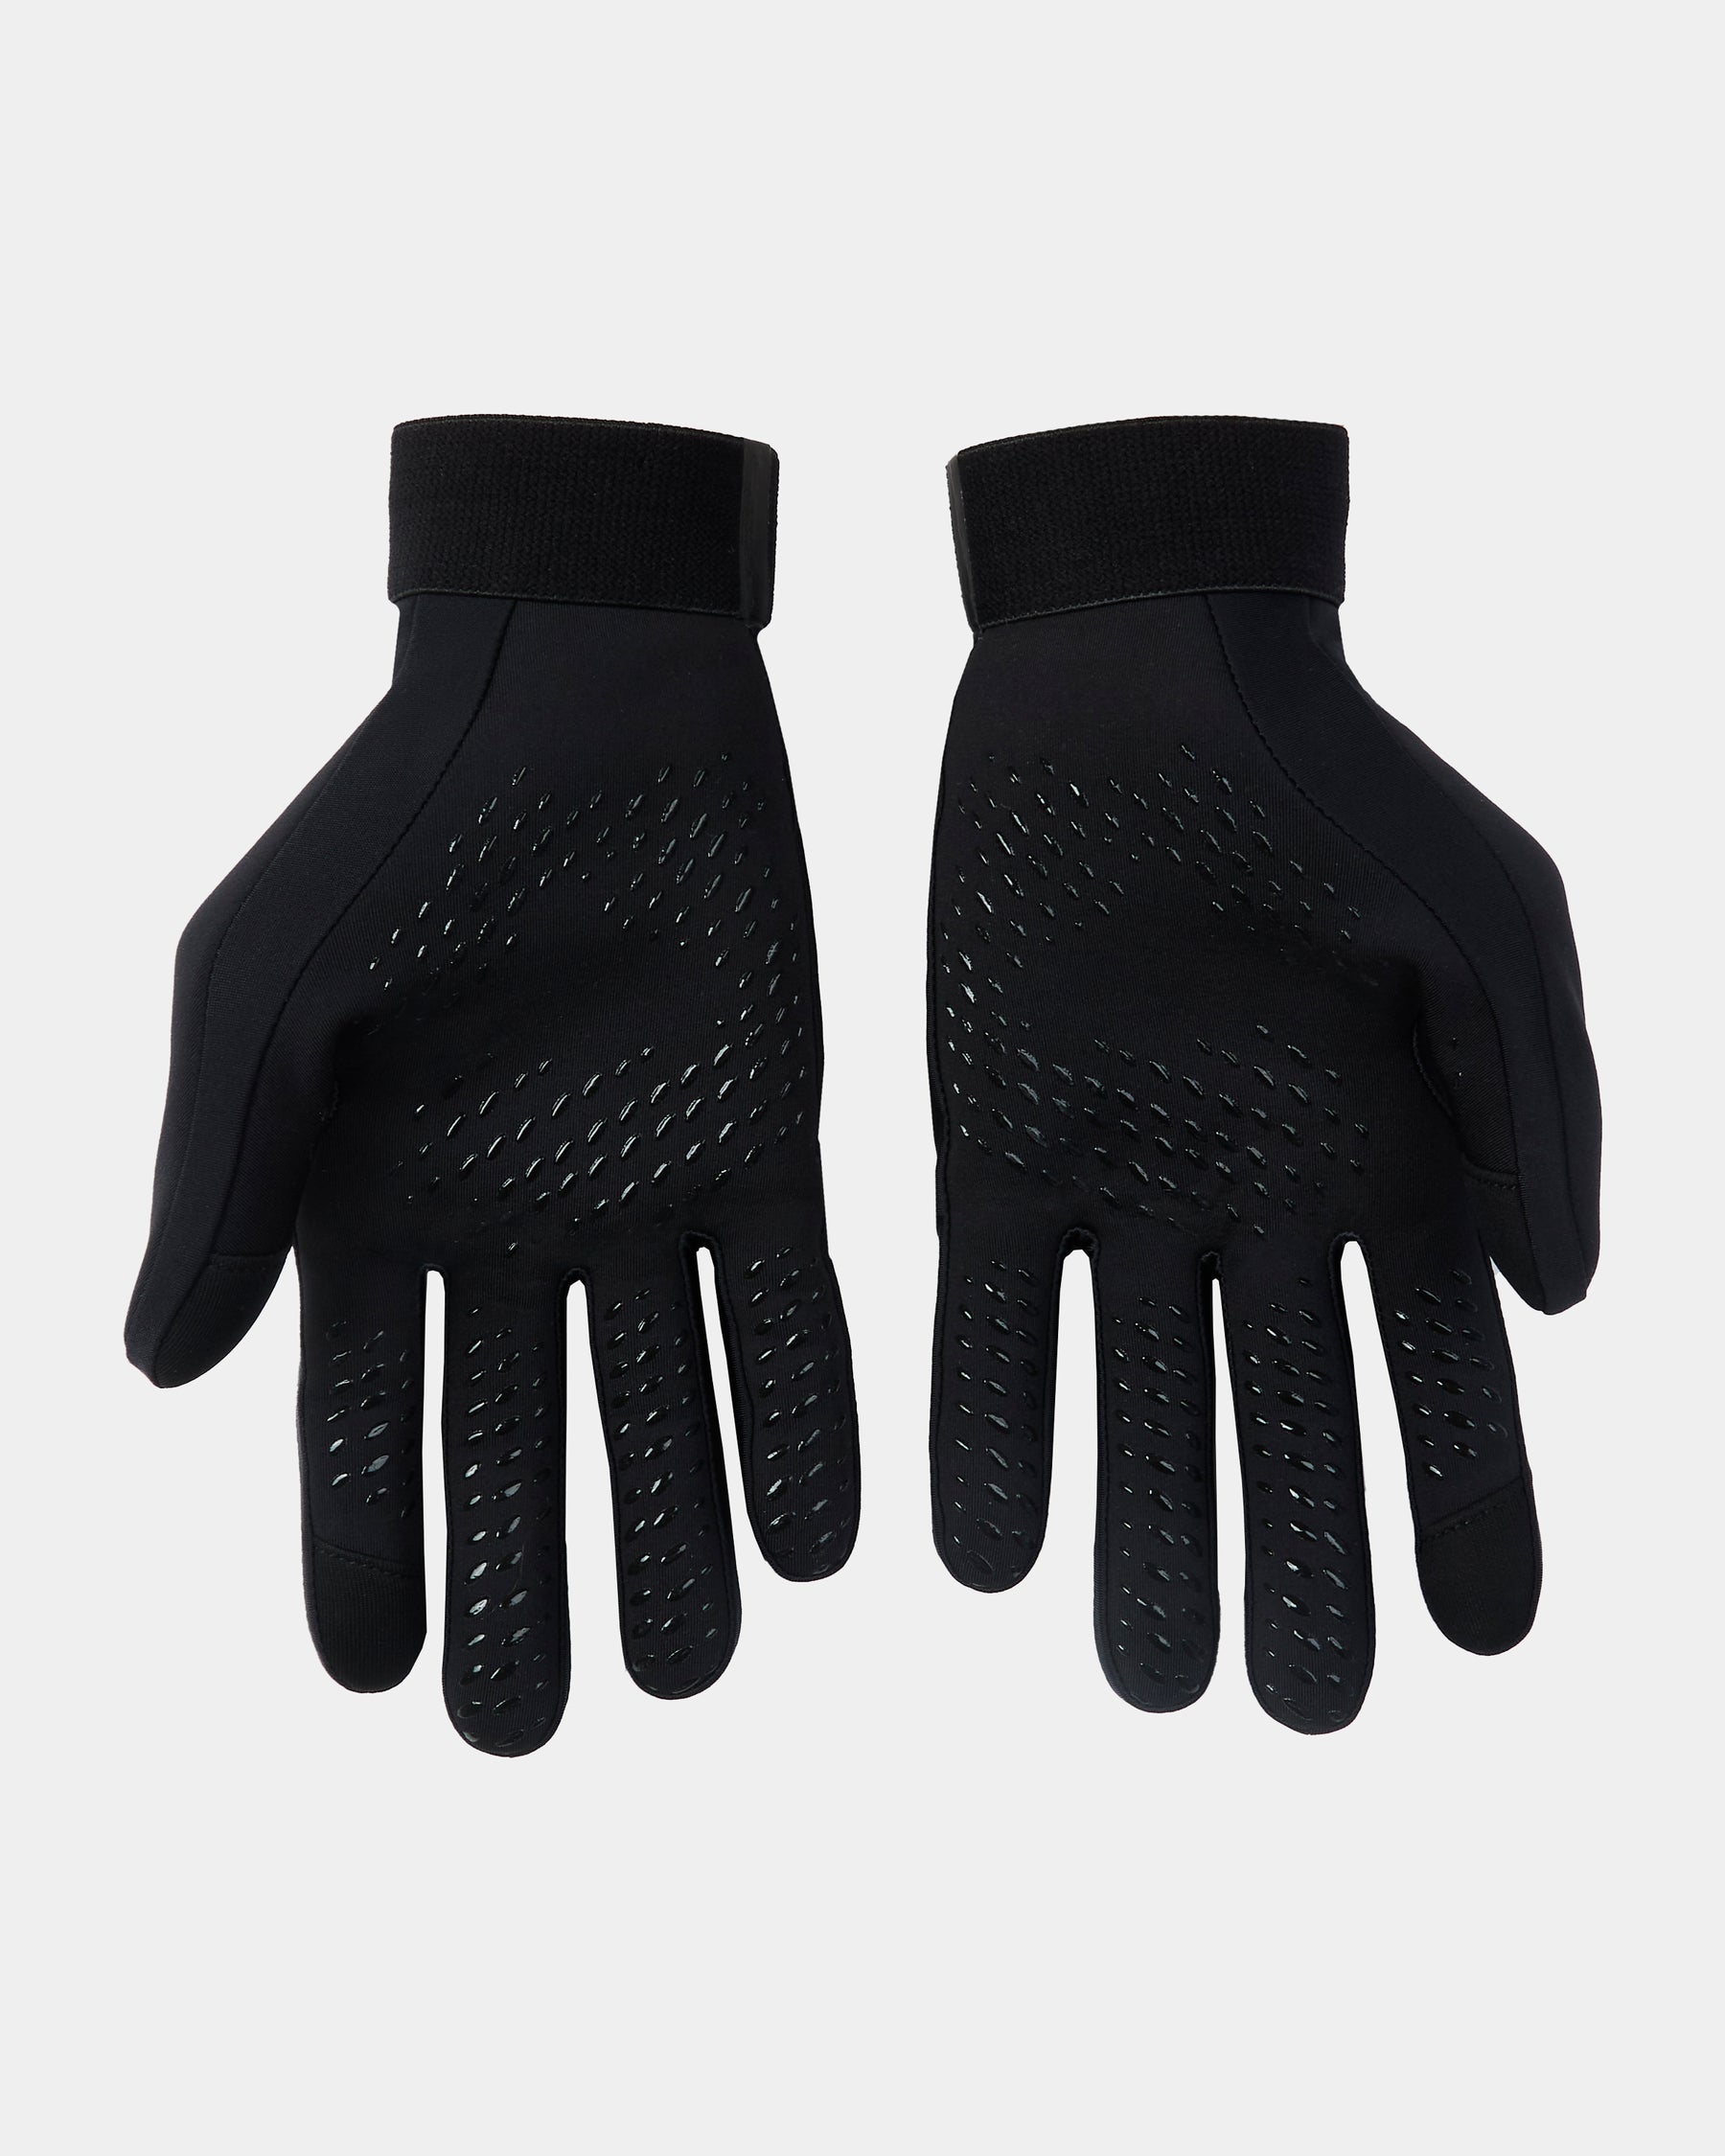 Target Gloves - Black/White